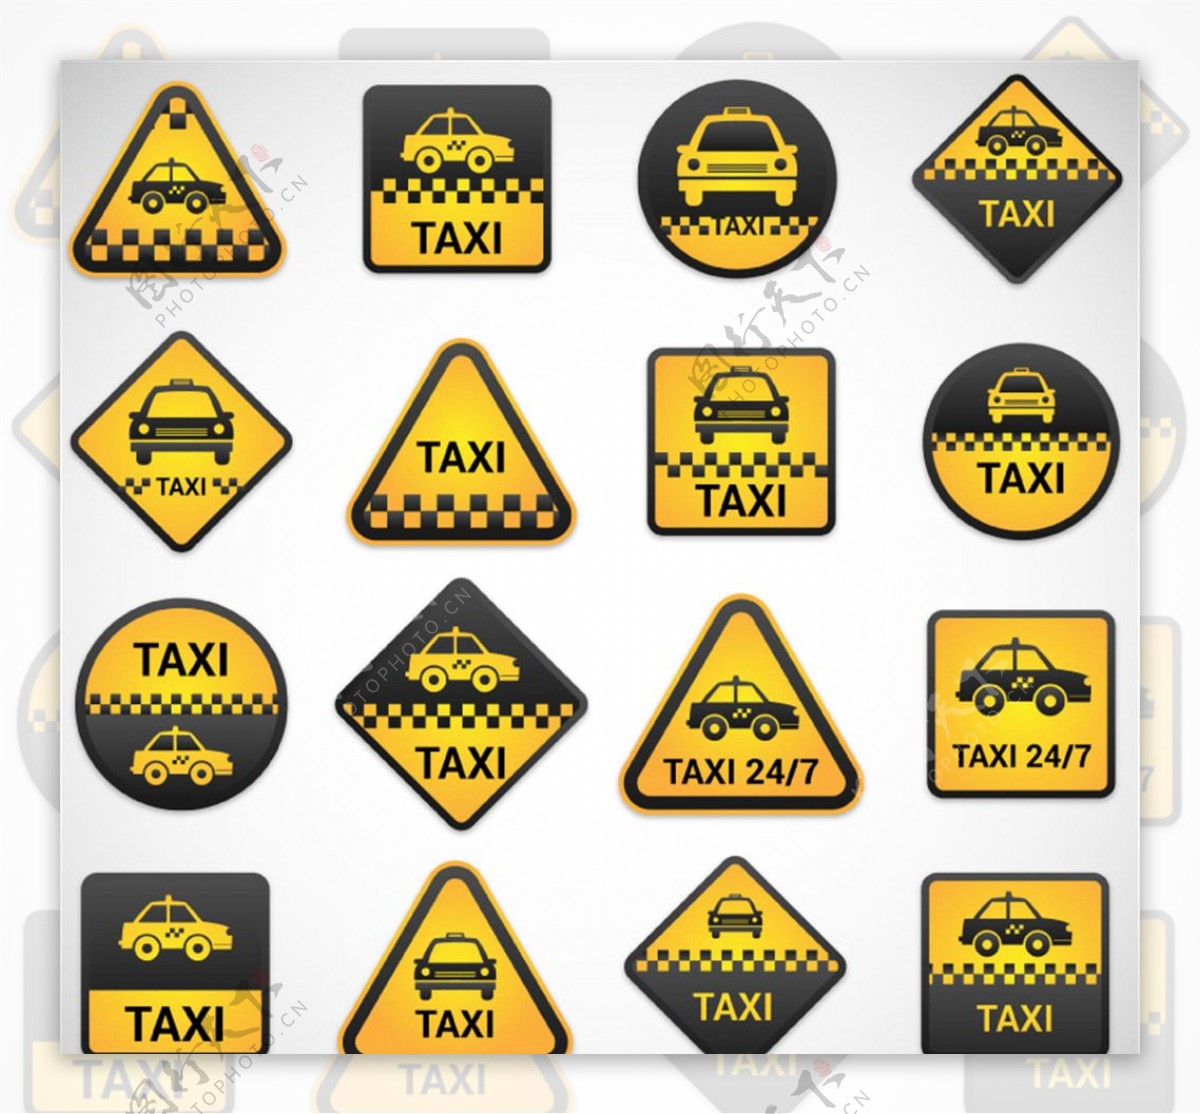 出租车标签矢量素材